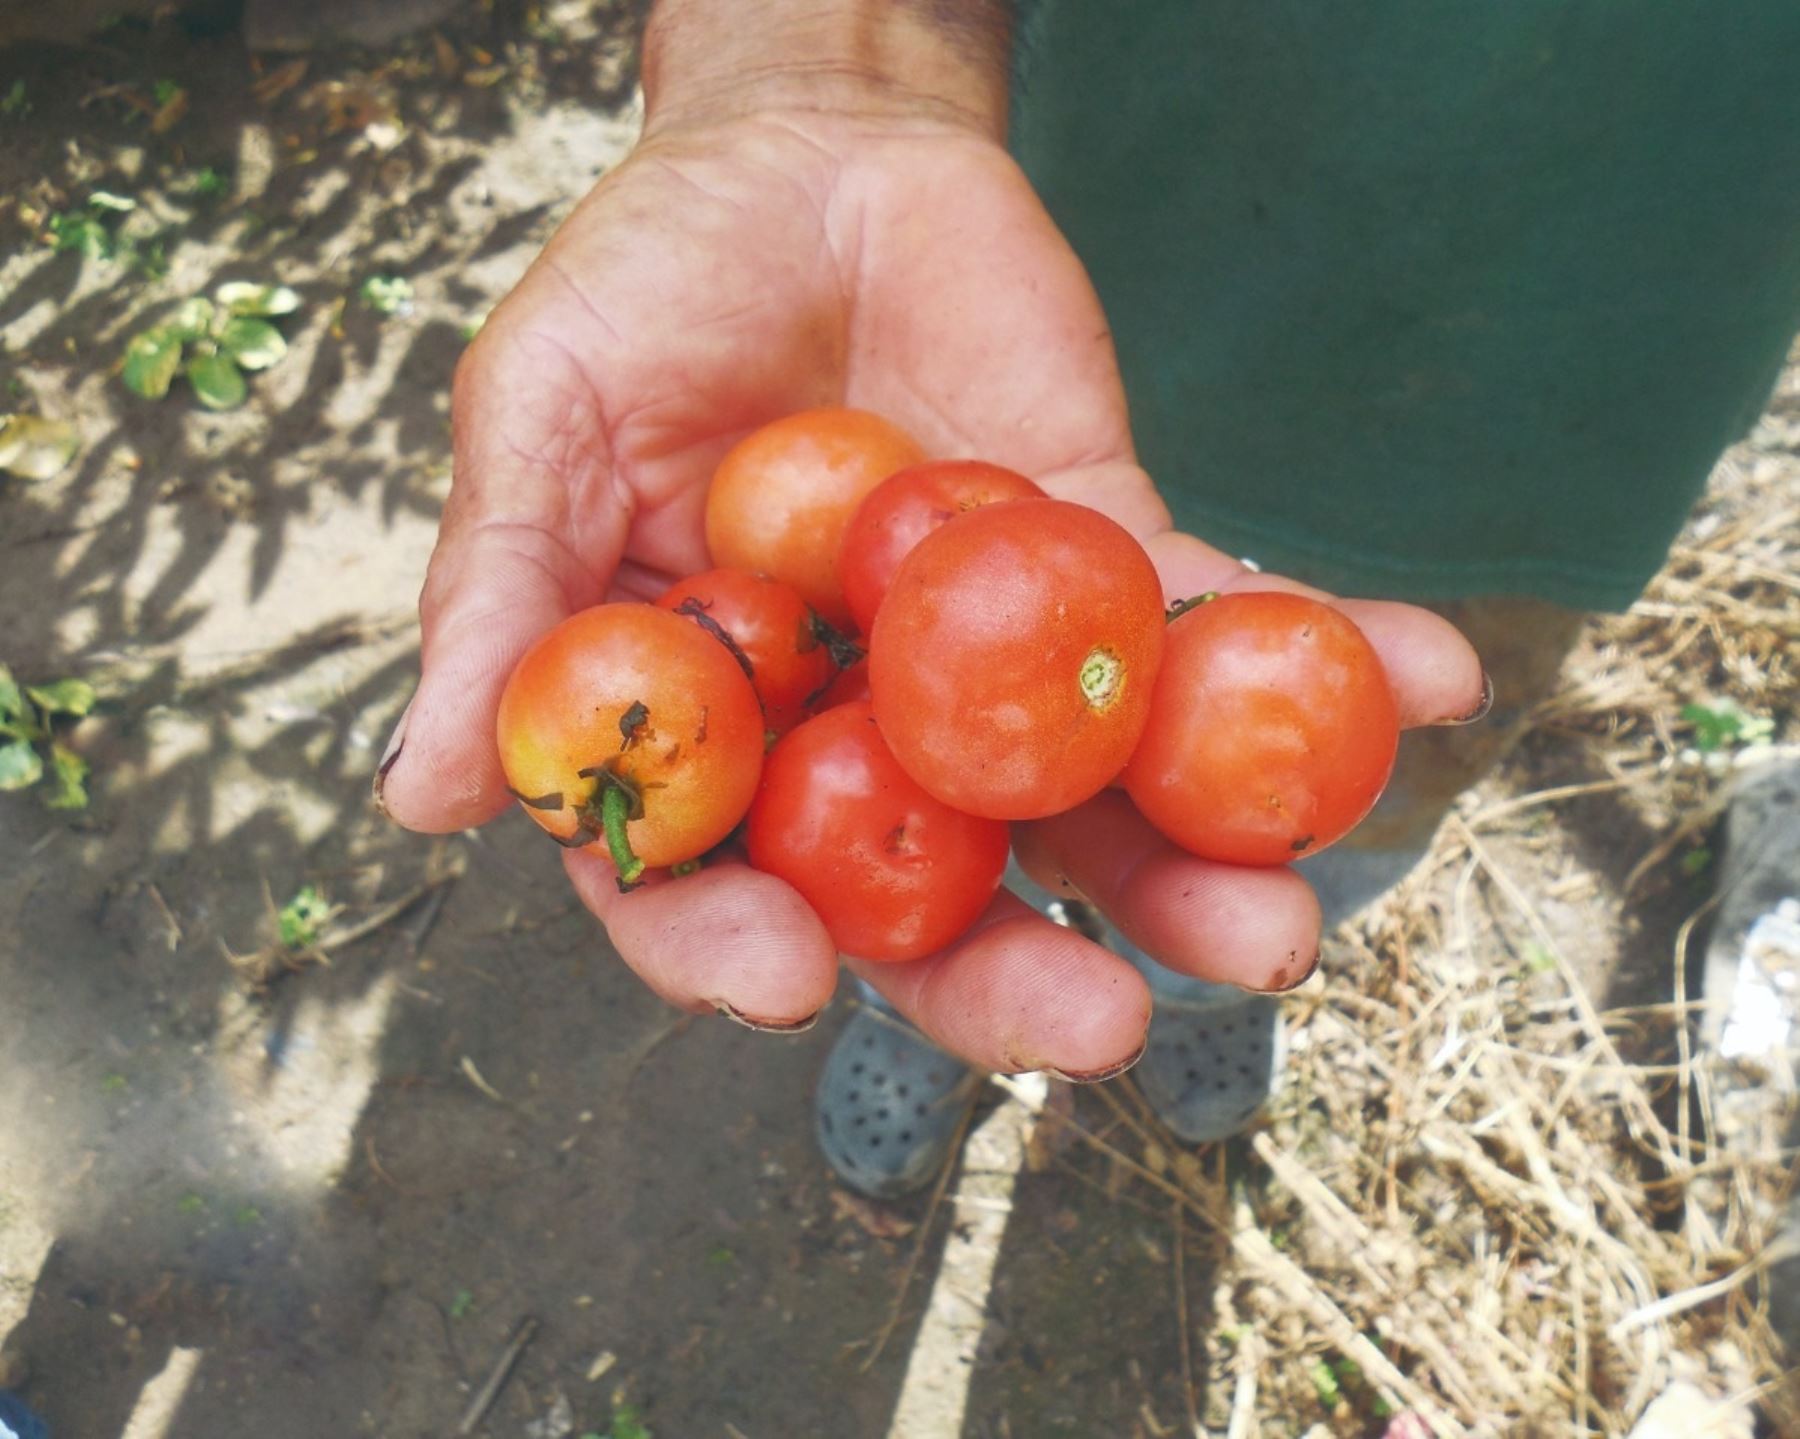 Estudio “Línea de base de la diversidad del tomate peruano con fines de biodiversidad” del Minam confirma que el Perú es uno de los centros de origen del tomate. Foto: Minam